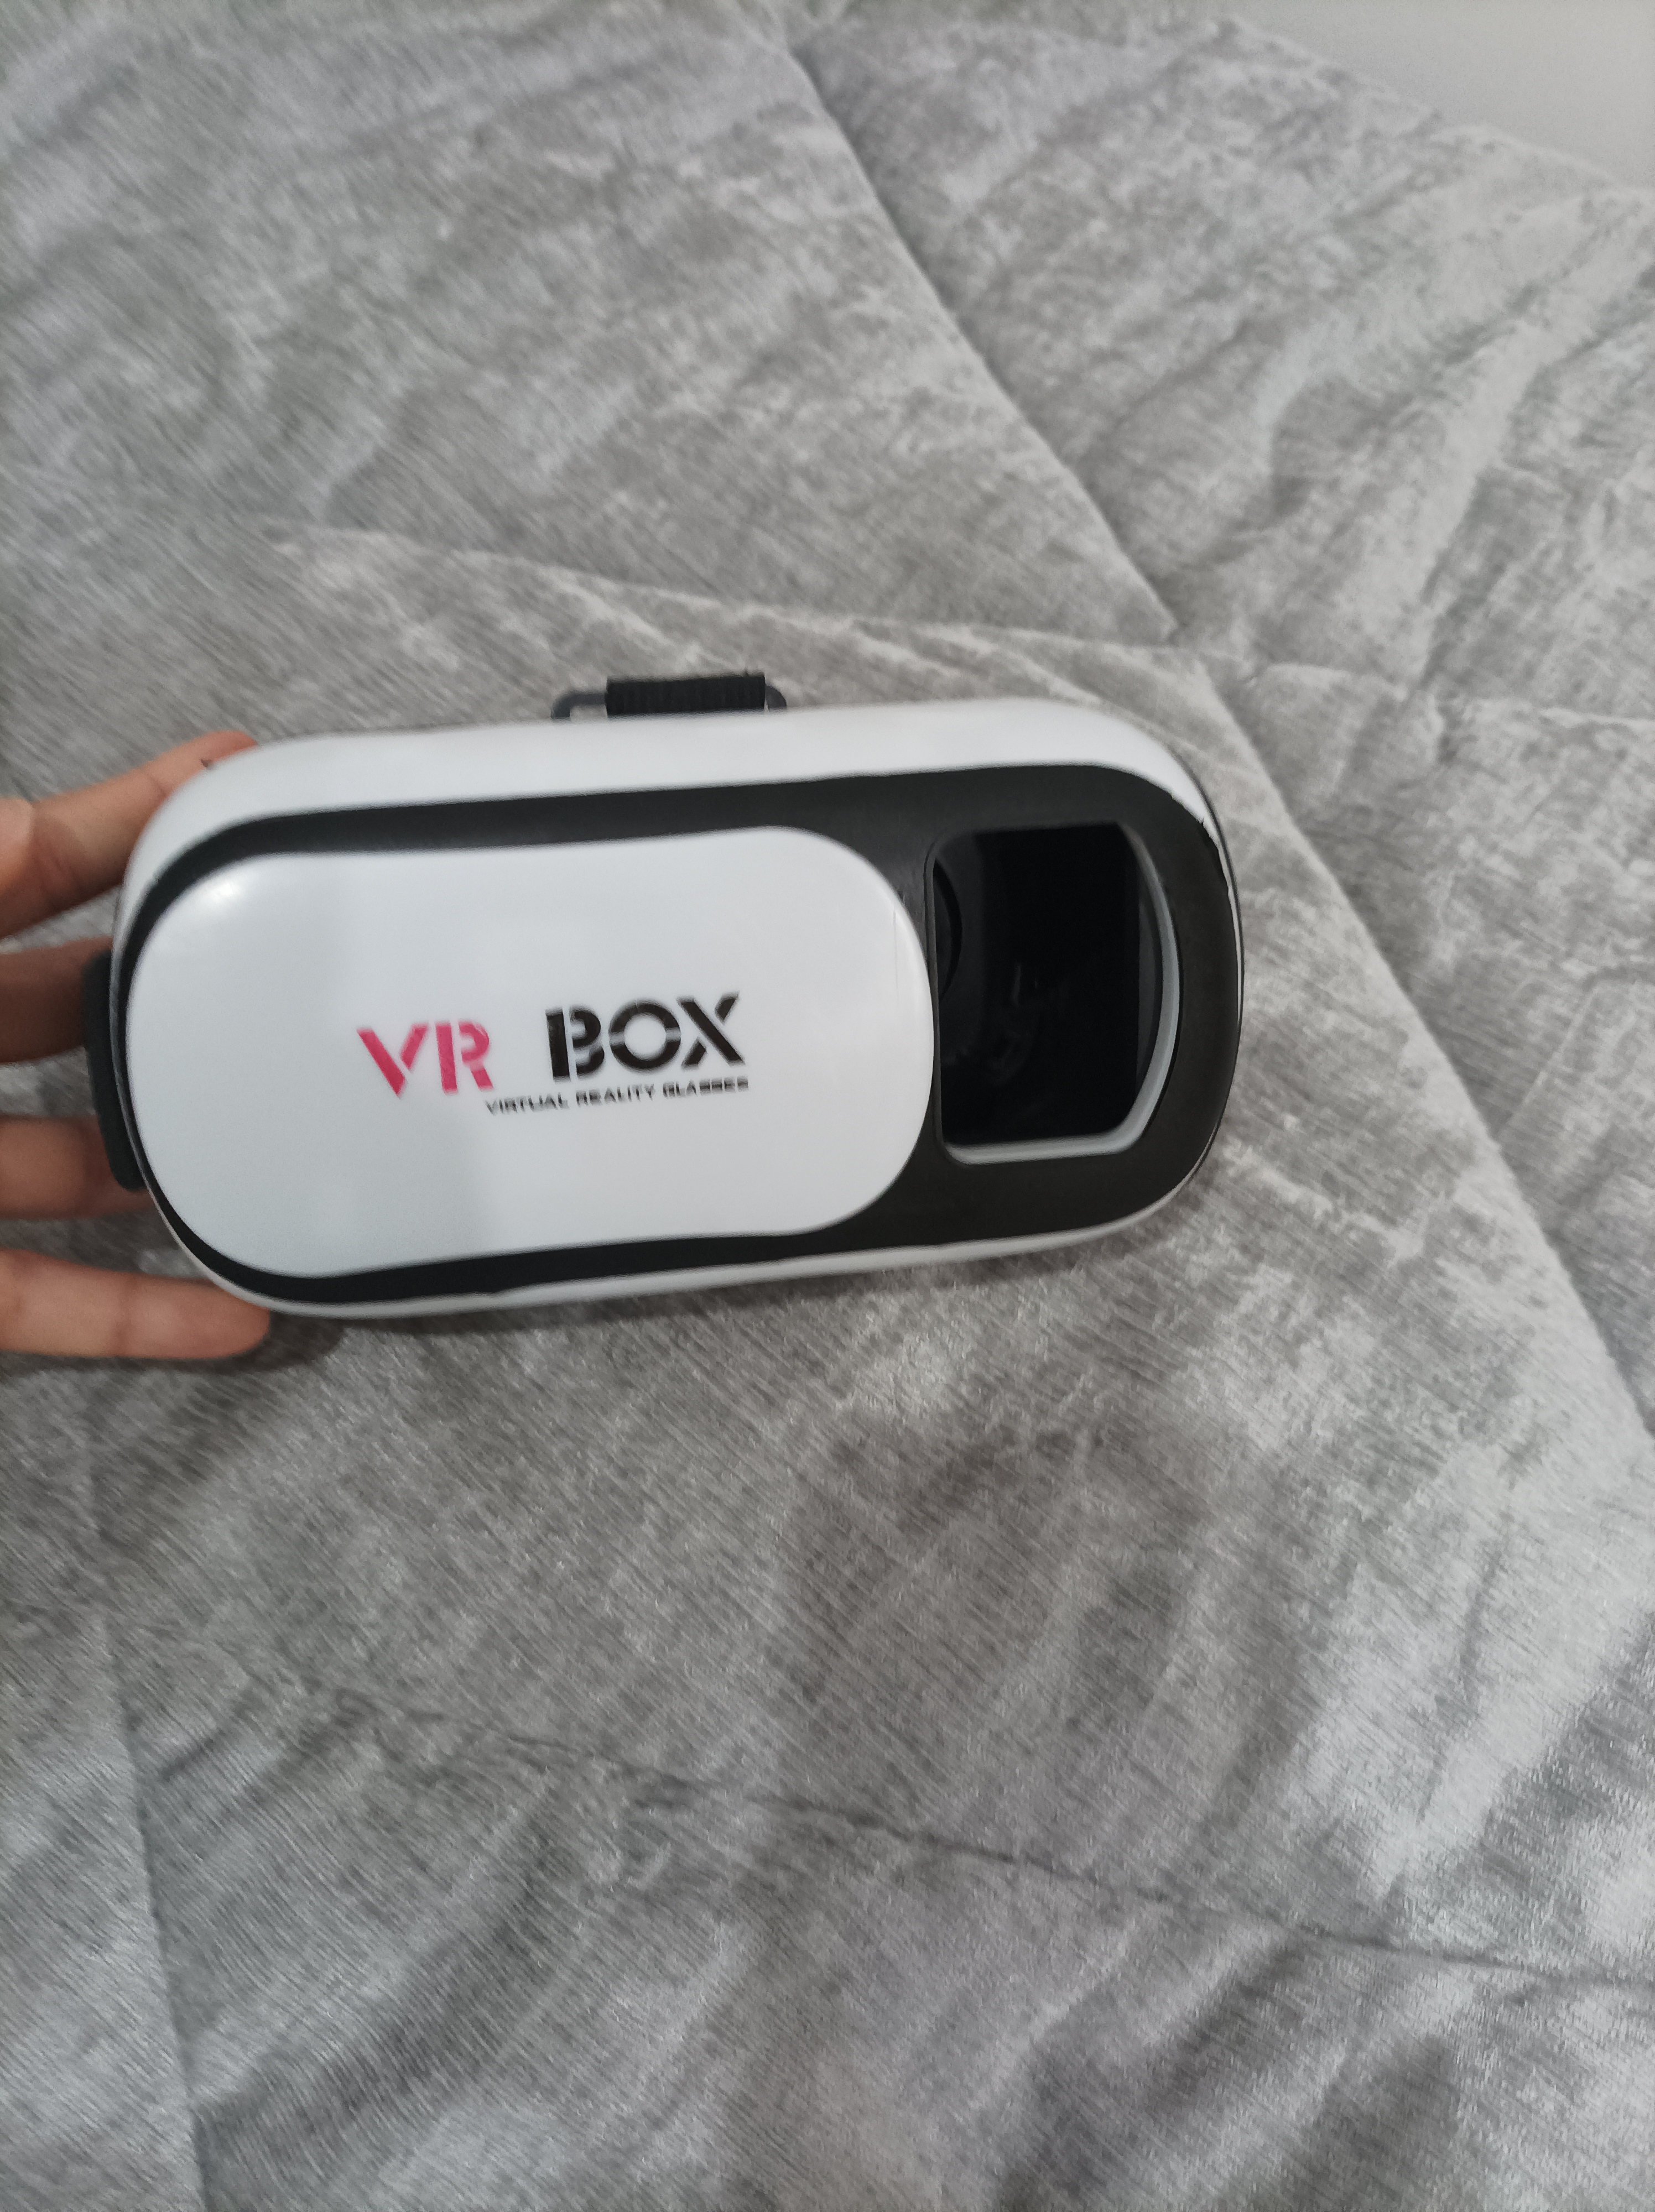 هدست واقعیت مجازی وی آر باکس مدل VR Box 2 به همراه ریموت کنترل بلوتوث و DVD حاوی اپلیکیشن و باتری